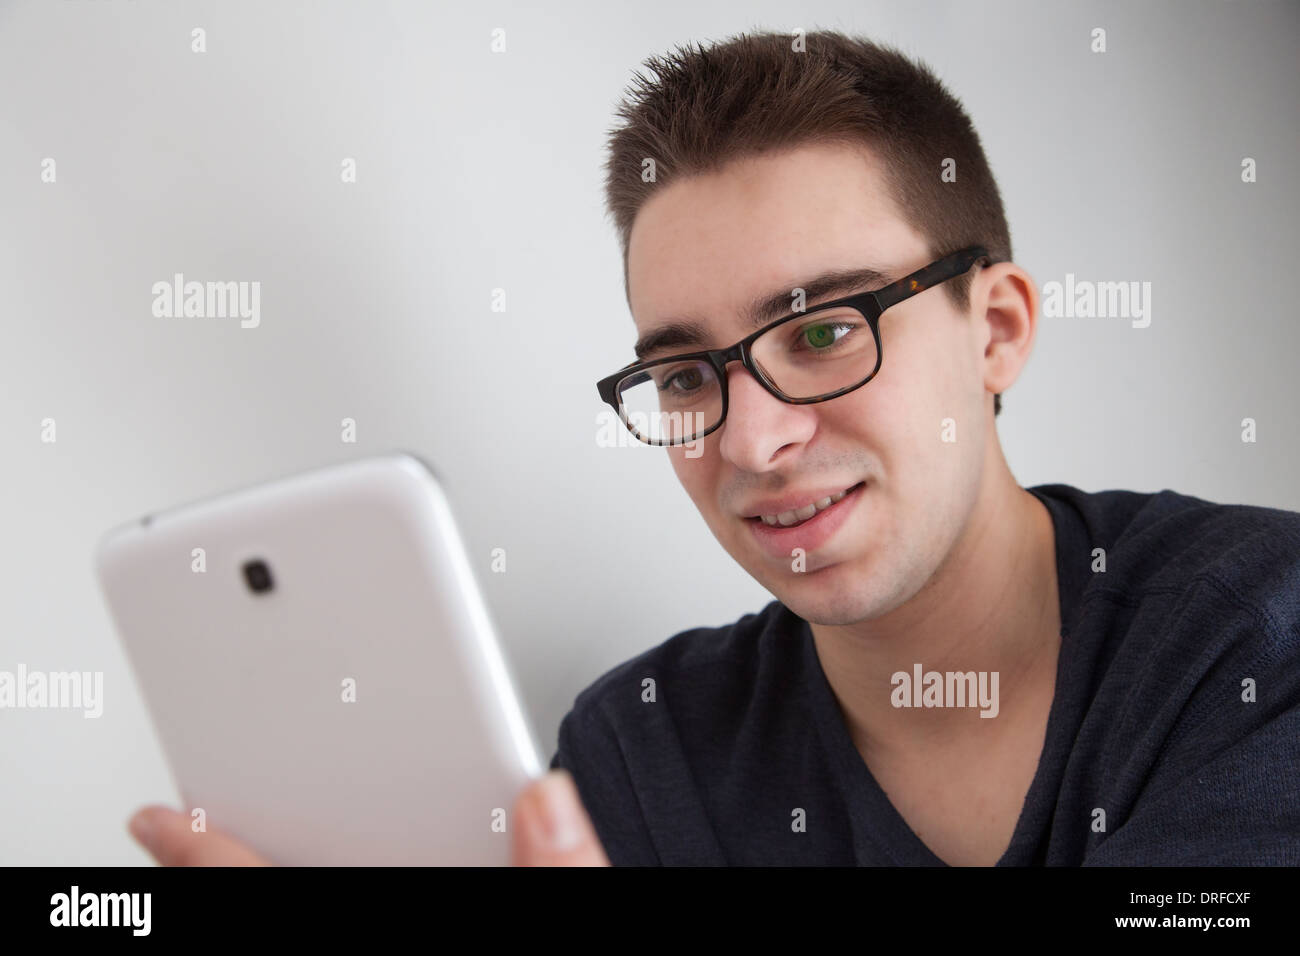 Gut aussehender junger Mann mit Brille, hält eine weiße digitale-Tablette. Kleine Kopie Raum. Stockfoto